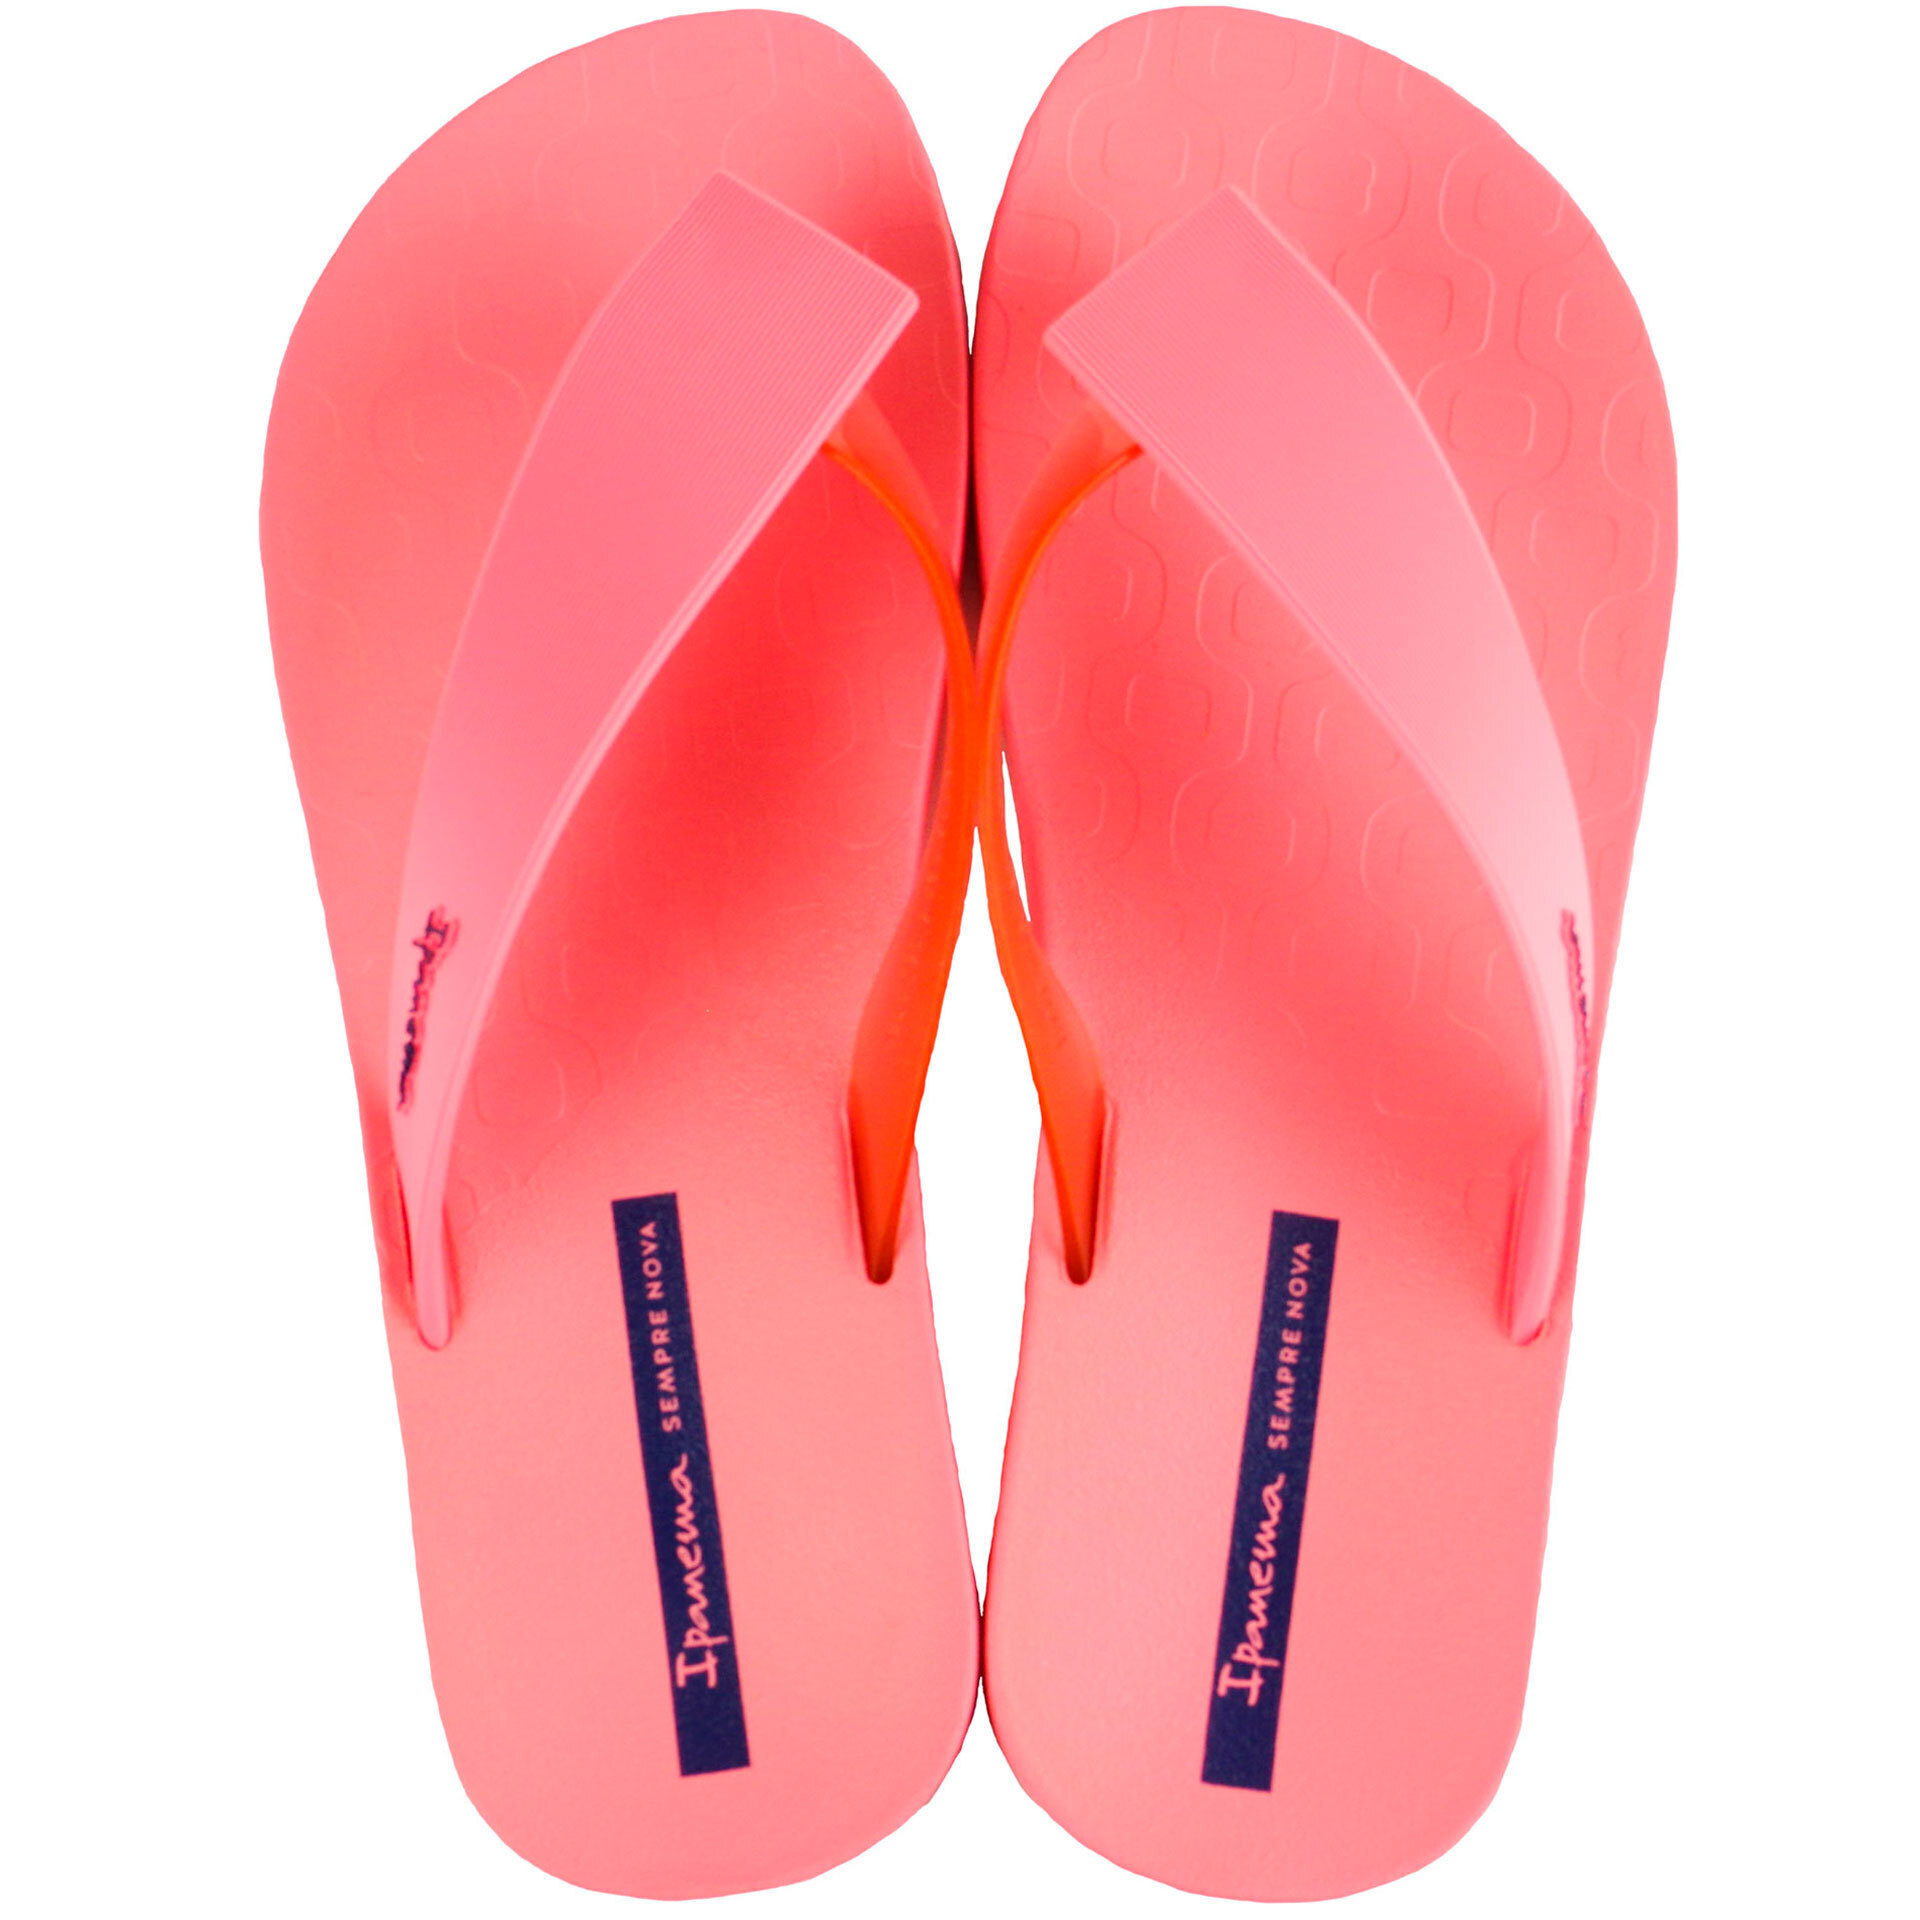 Пляжная обувь для девочки - шлепки подростковые (2005) 36-42 размеры, цвет Розовый – Sole Kids